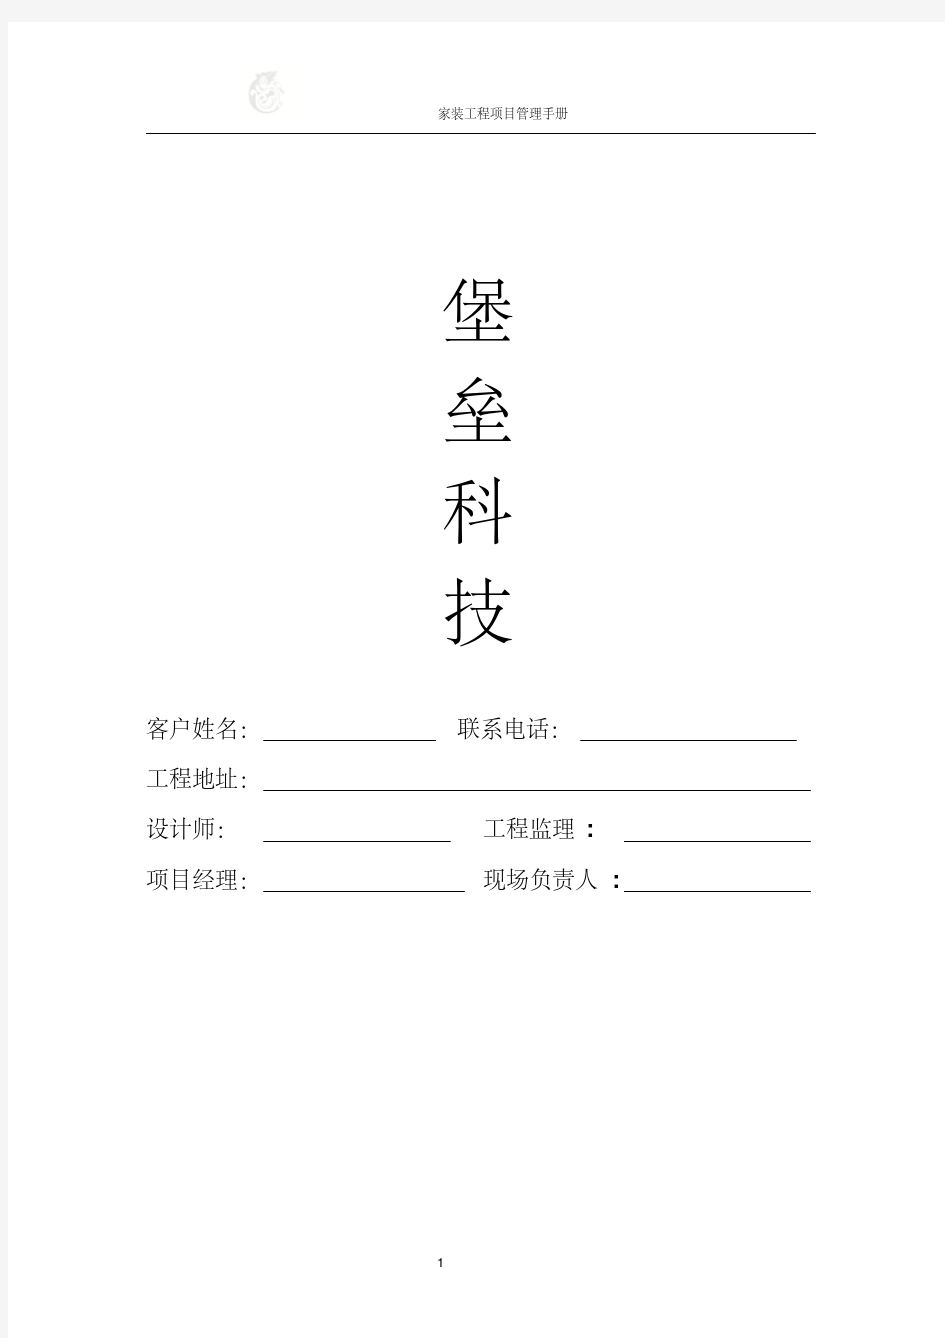 家装工程项目管理手册(完整版)(20200420160505)